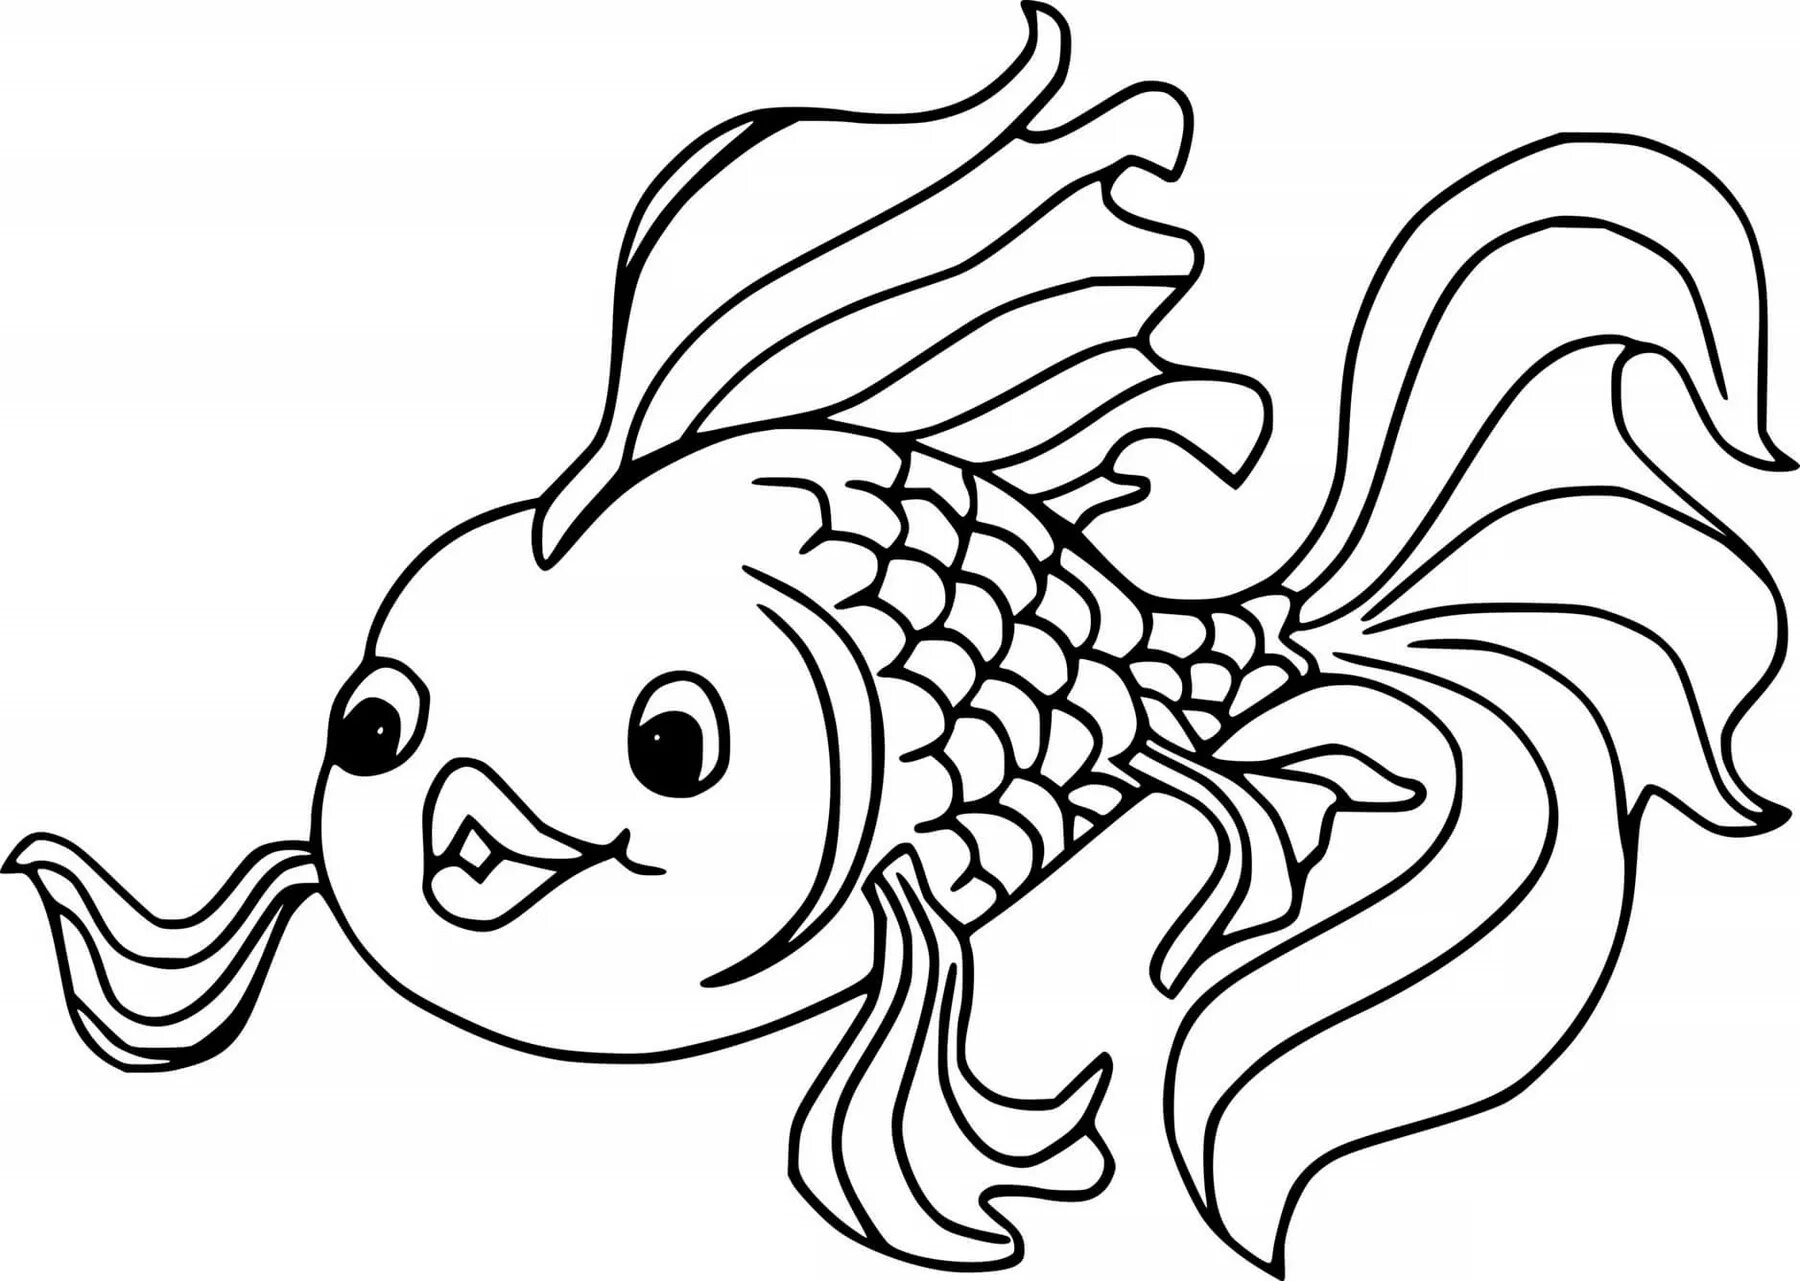 Раскраска рыбы для детей 7 лет. Раскраска рыбка. Рыбка раскраска для детей. Золотая рыбка раскраска. Рыба раскраска для детей.